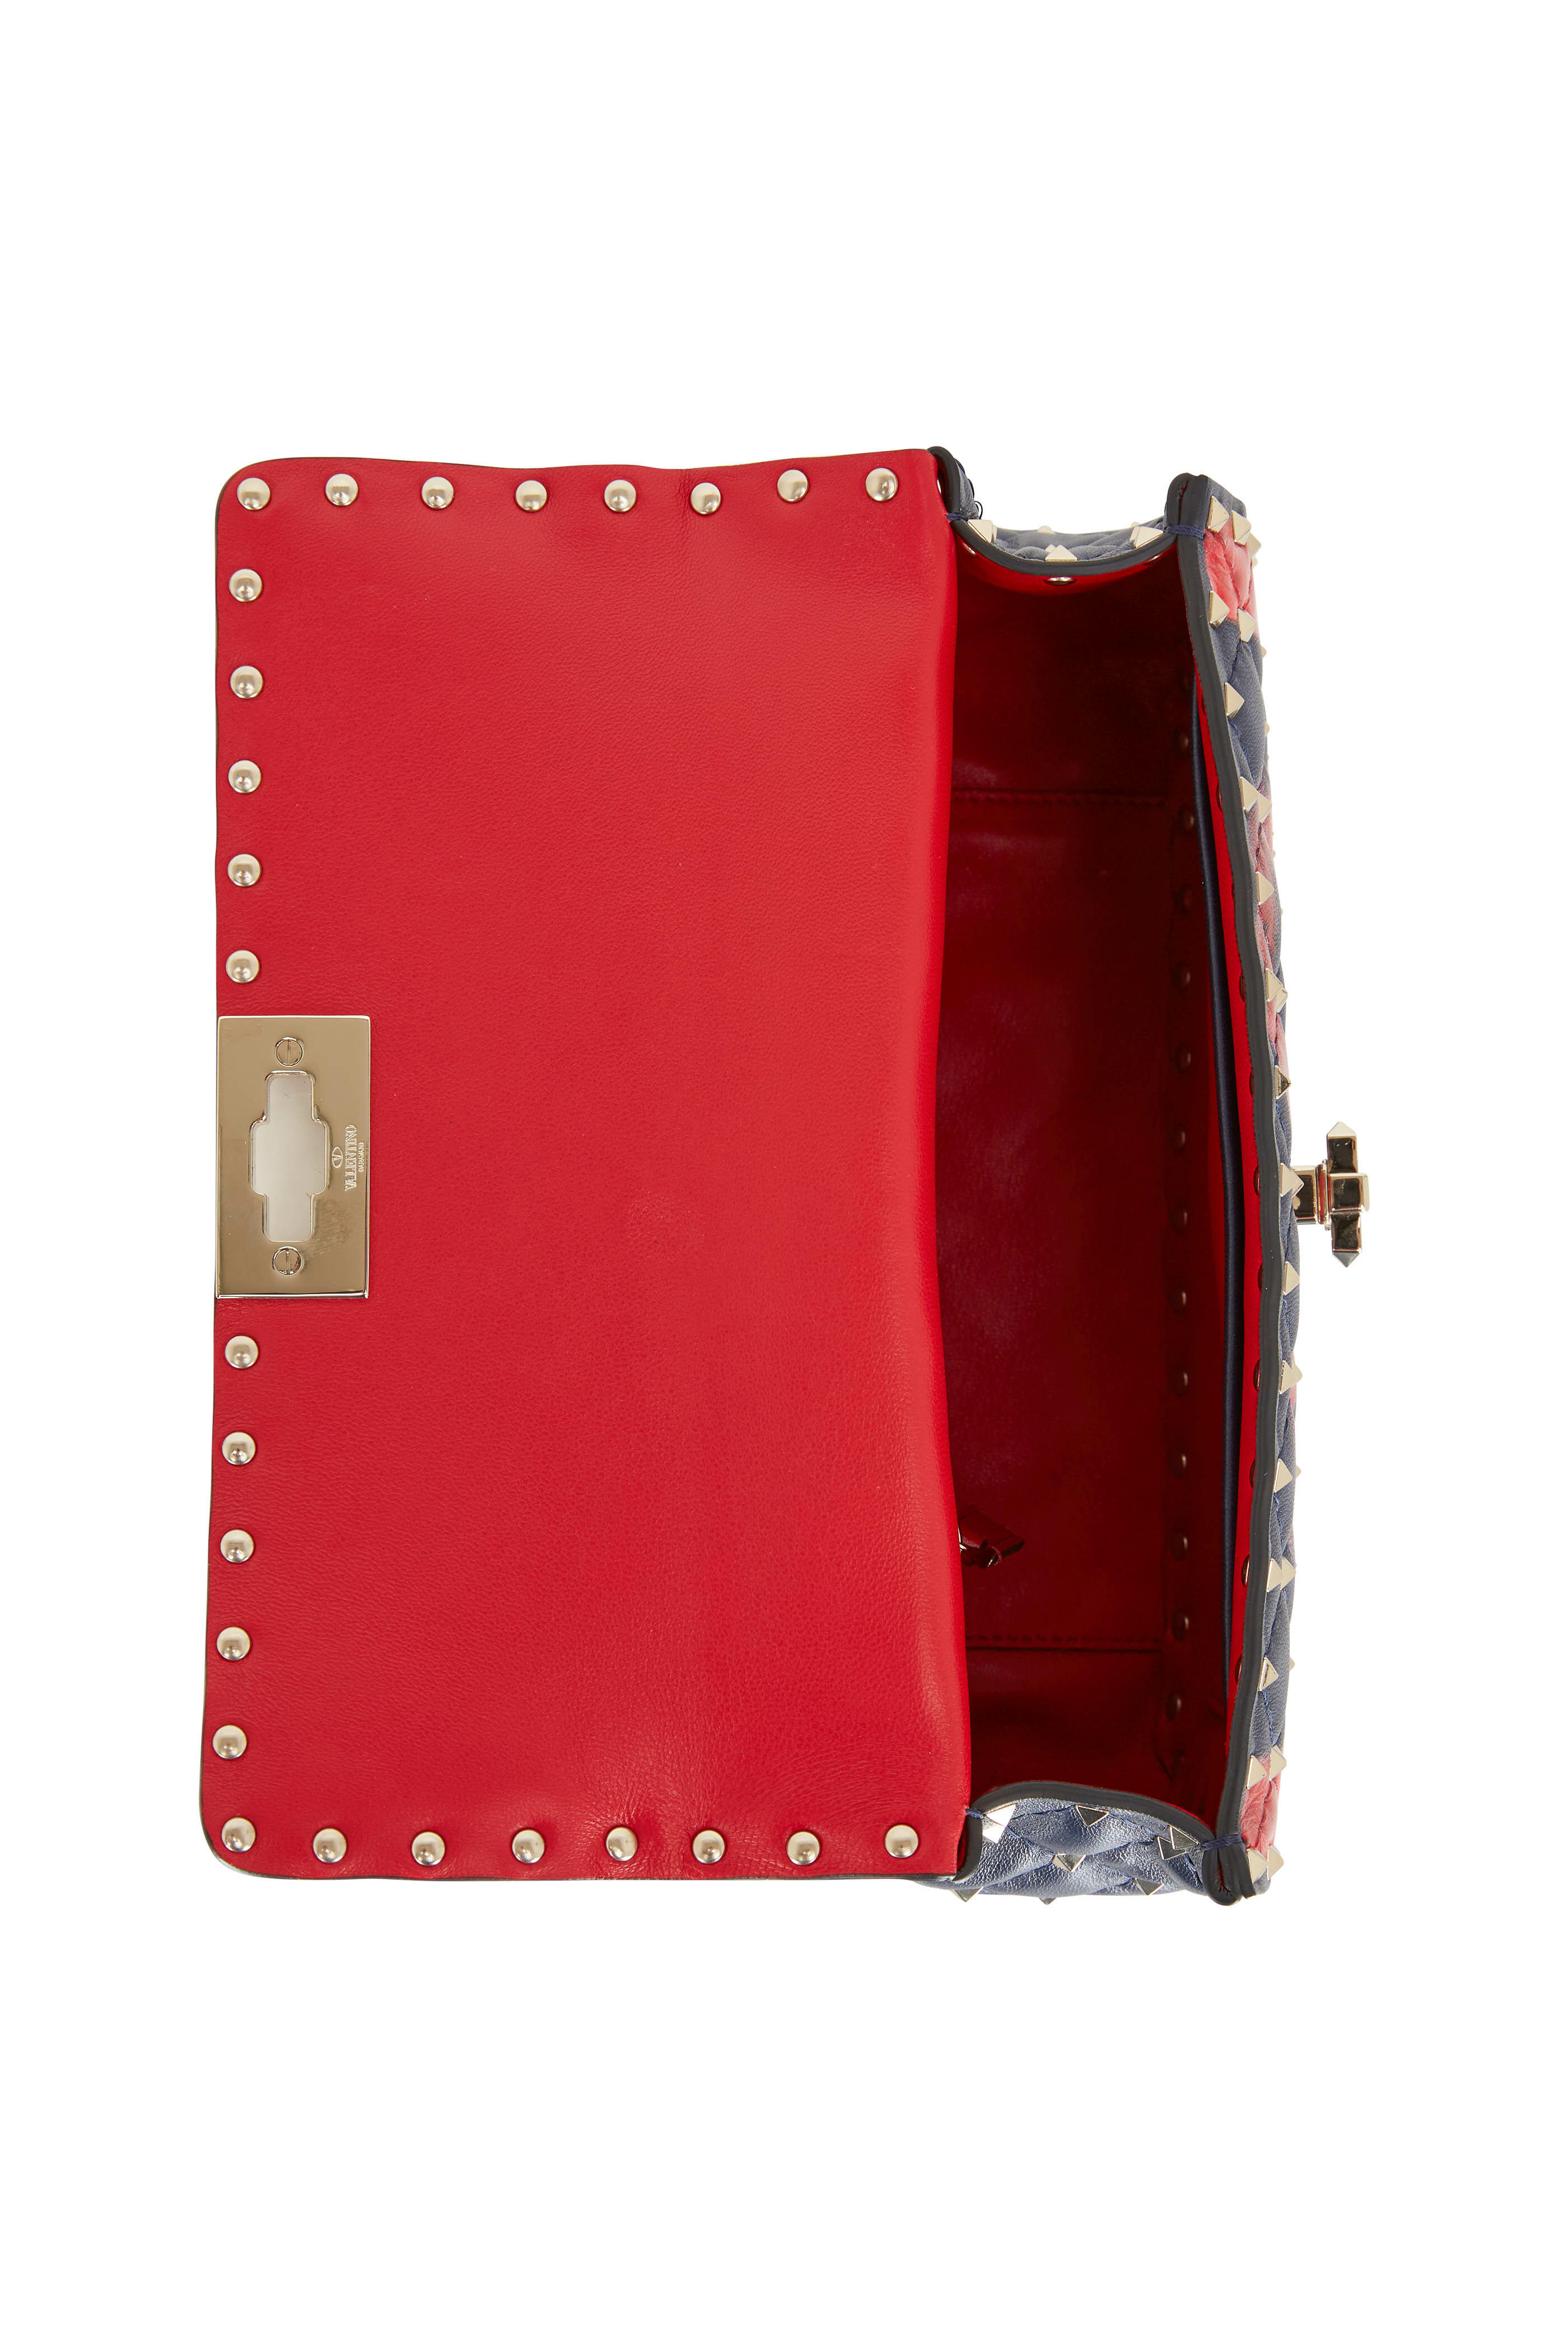 VALENTINO GARAVANI: Rockstud leather shoulder bag - Red